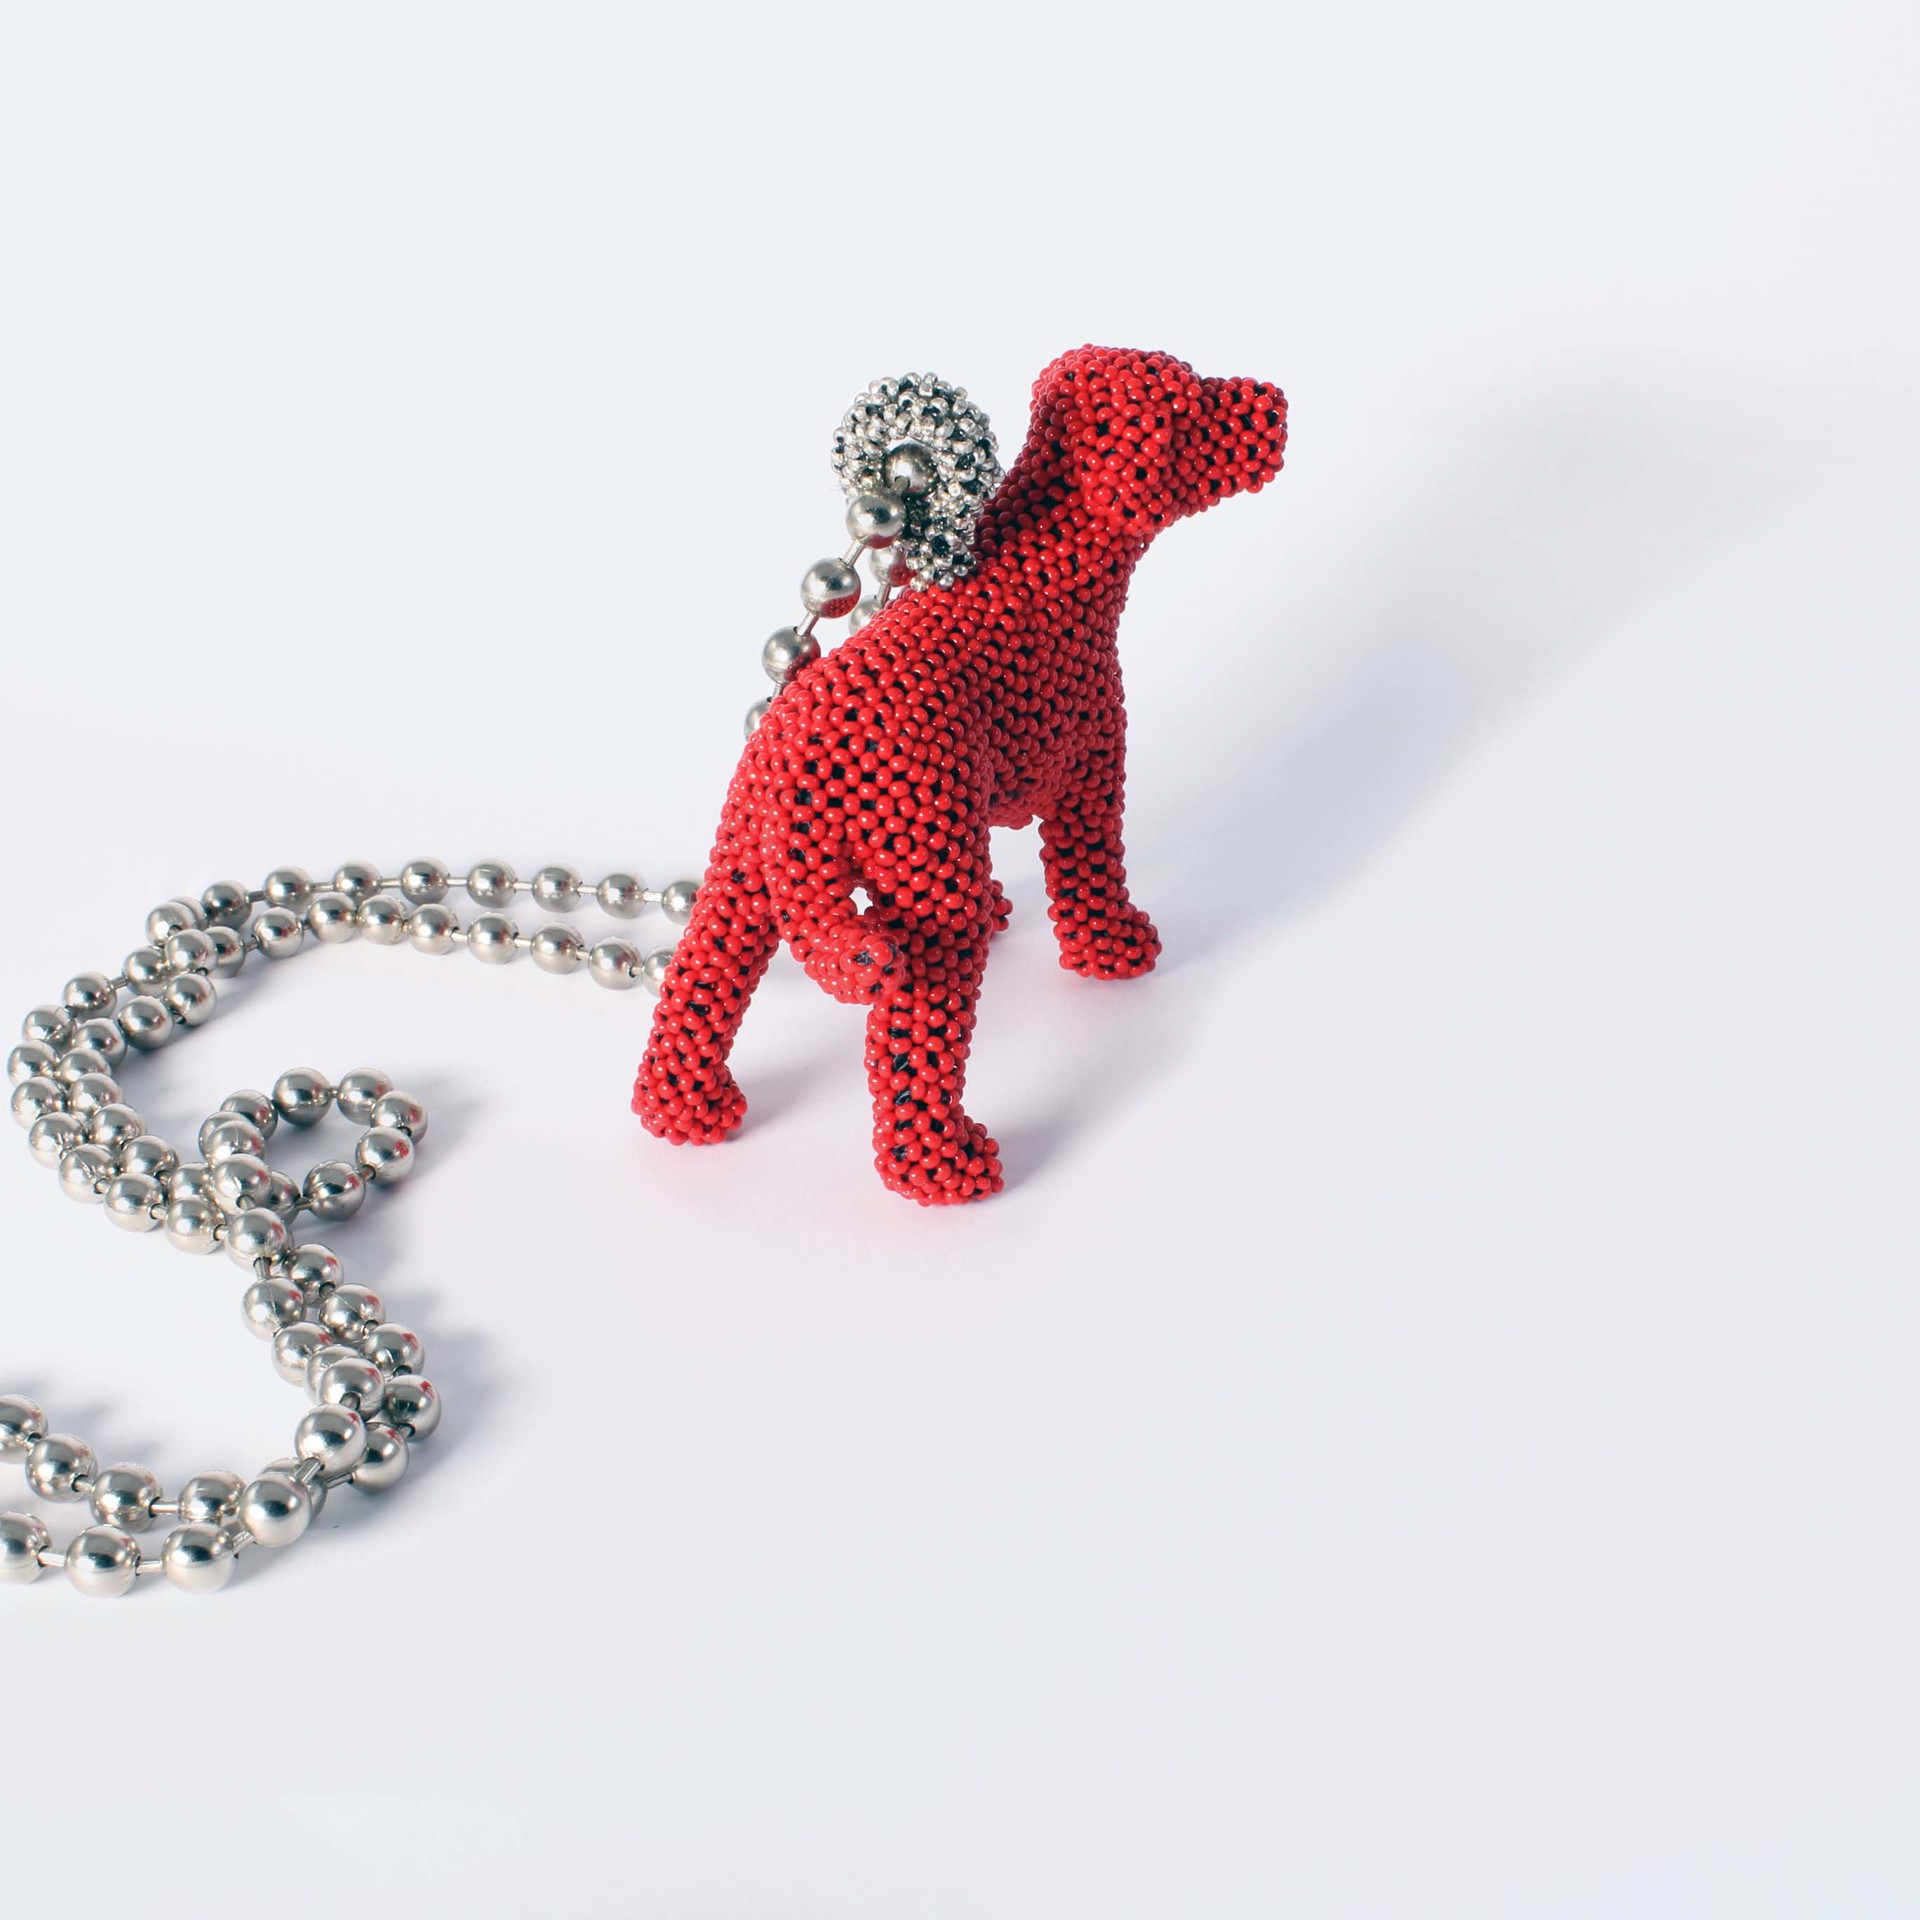 Red Dog Pendant by David Chatt